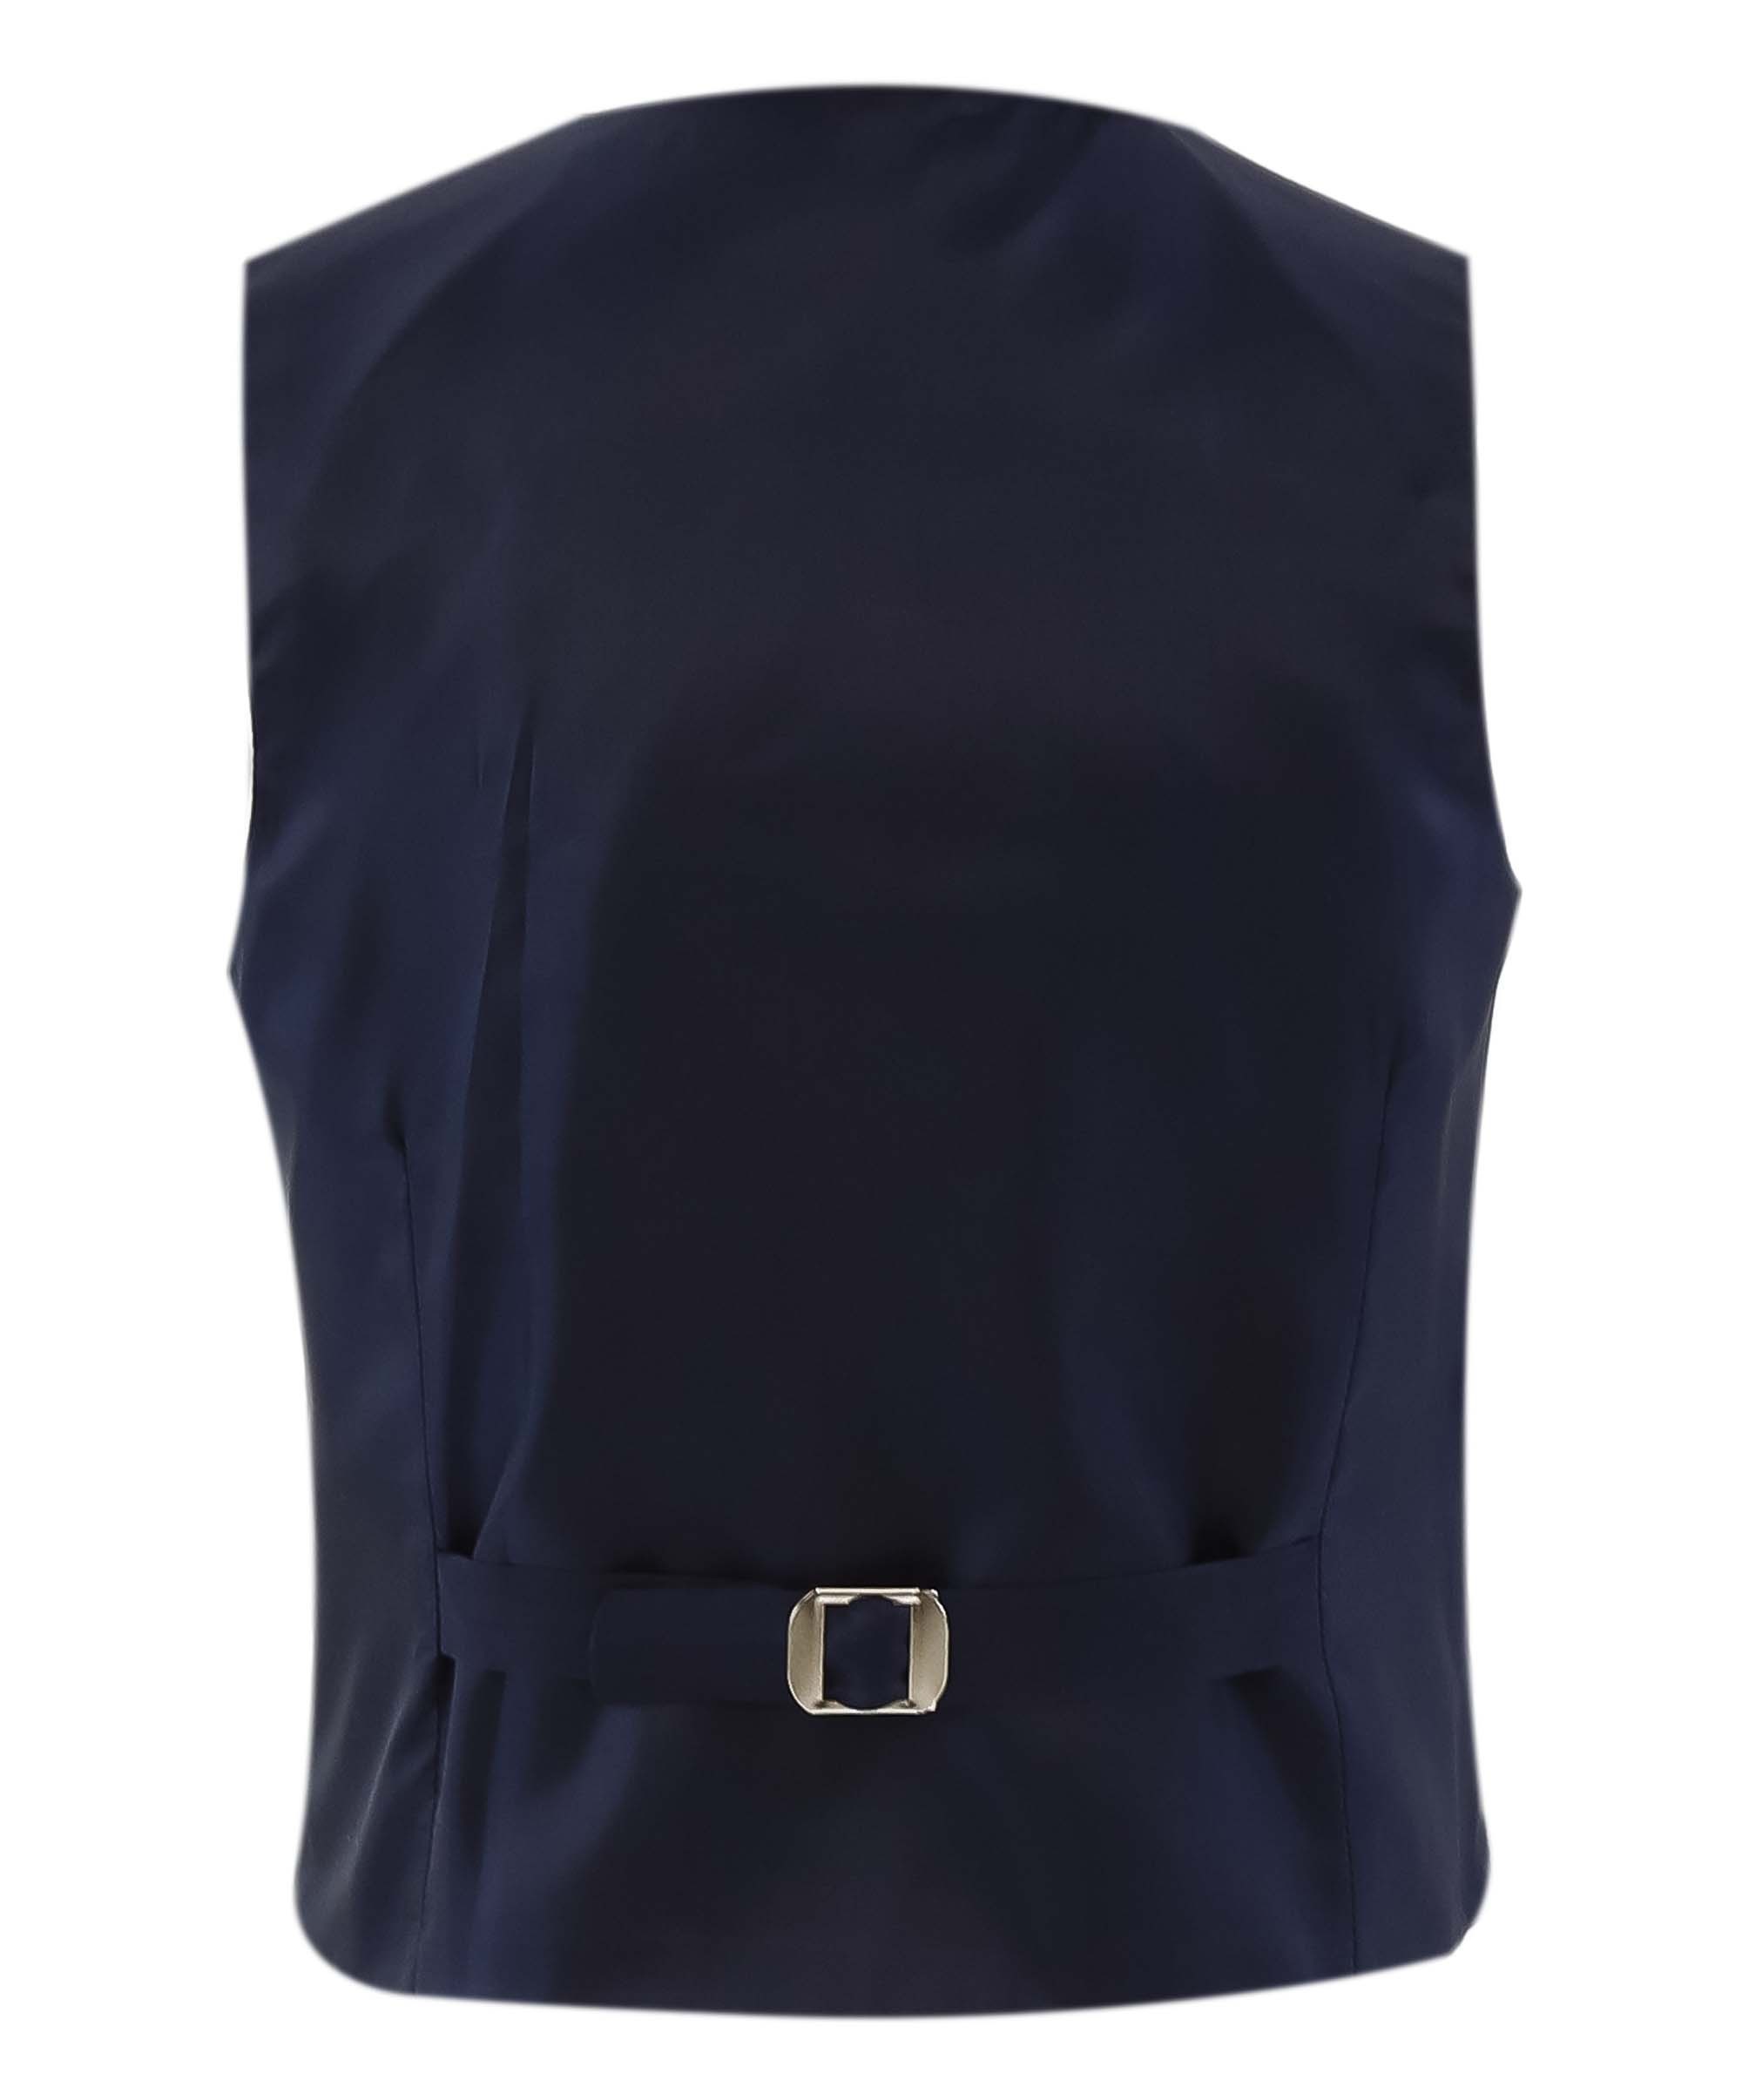 Boys Herringbone Tweed Waistcoat Suit - Navy Blue